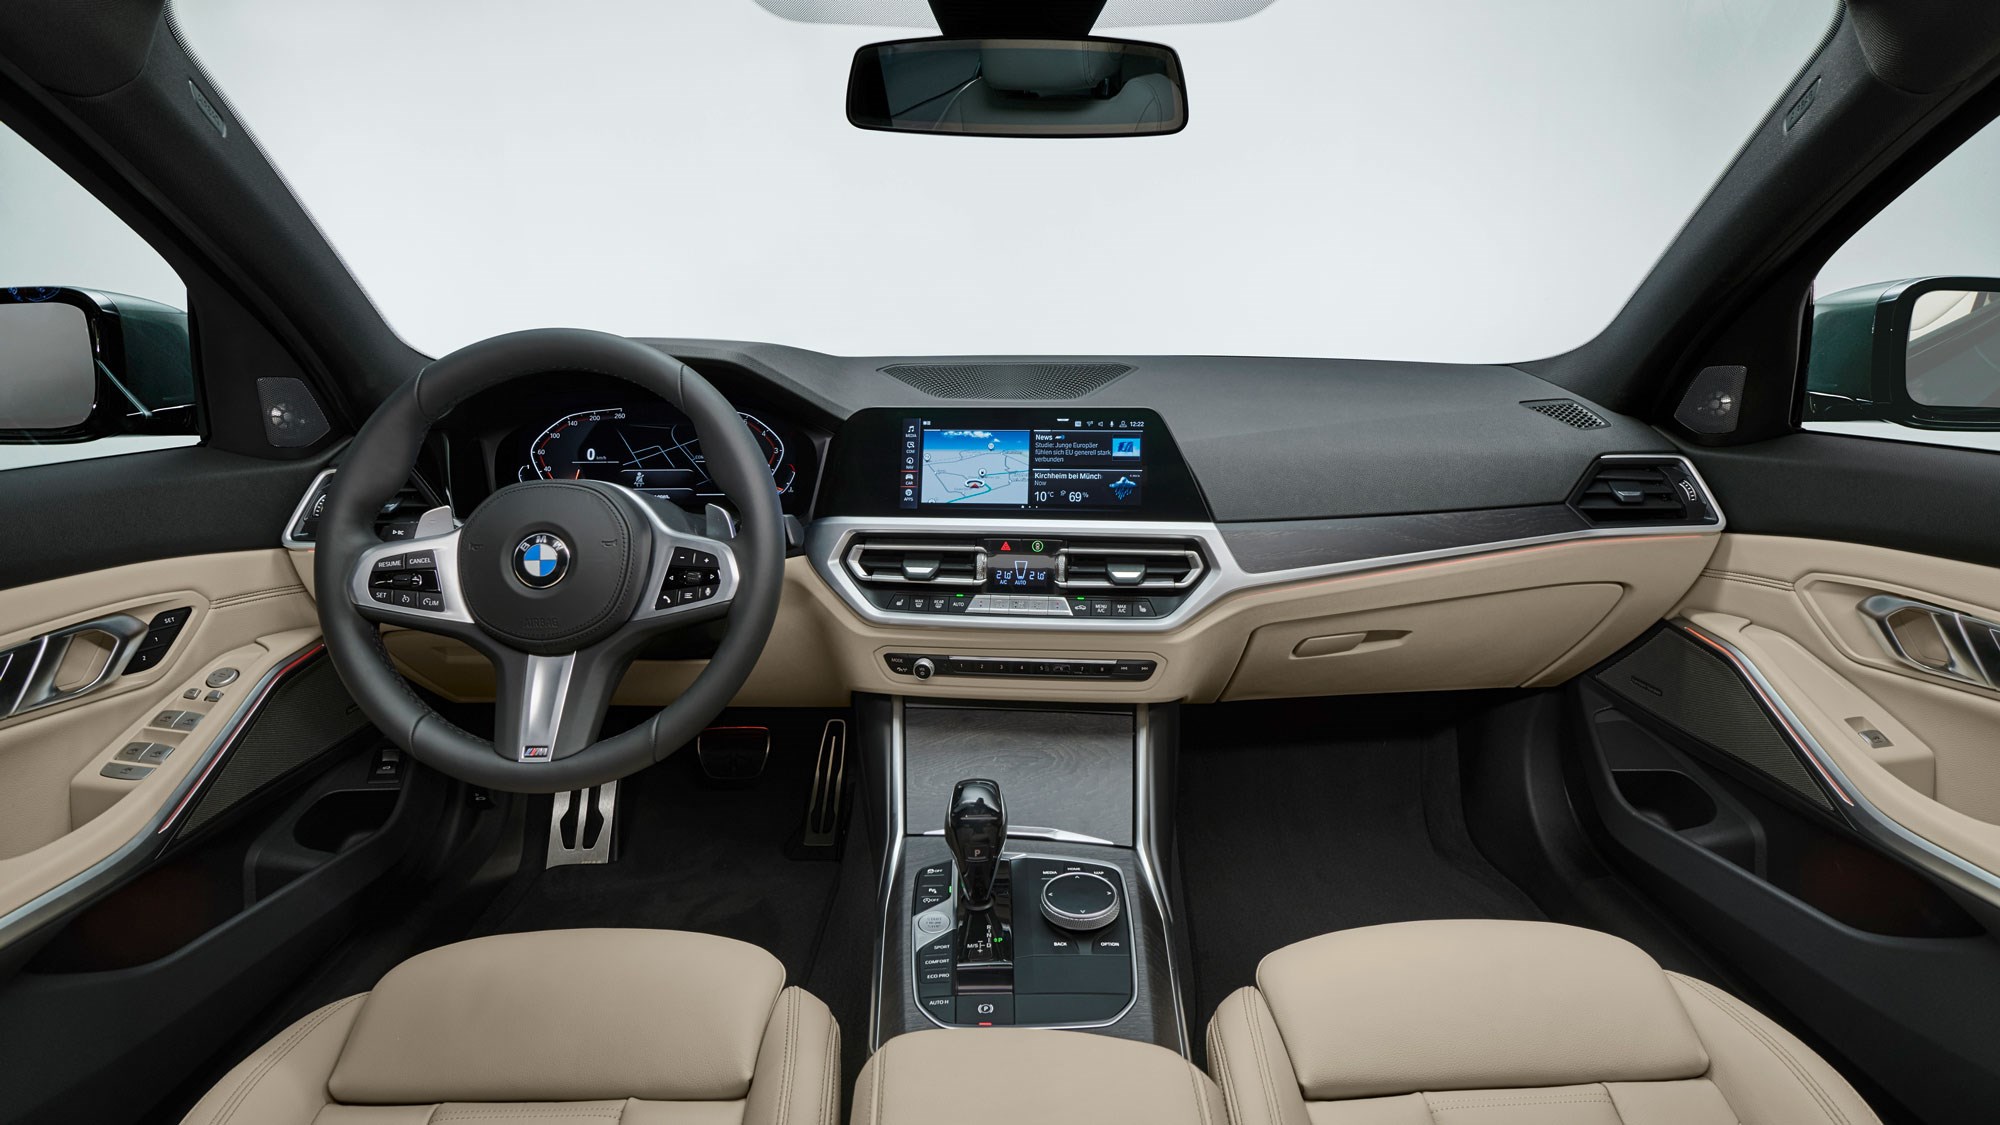 BMW 3 Series Touring - Mid-size Family Estate: Price, Interior